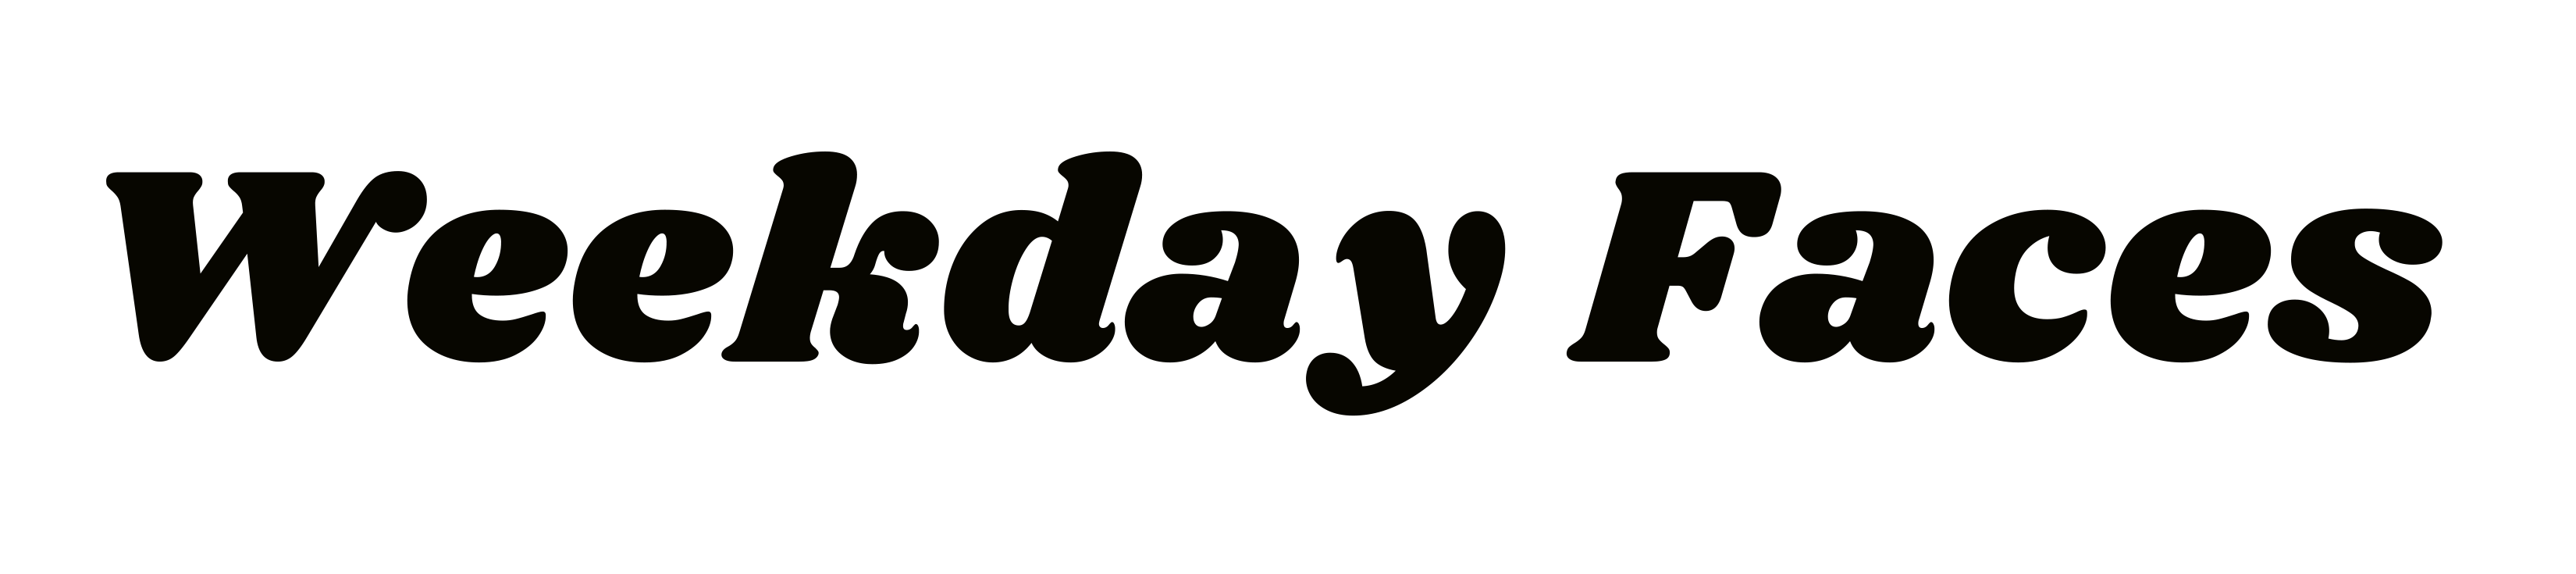 WeekdayFaces logo